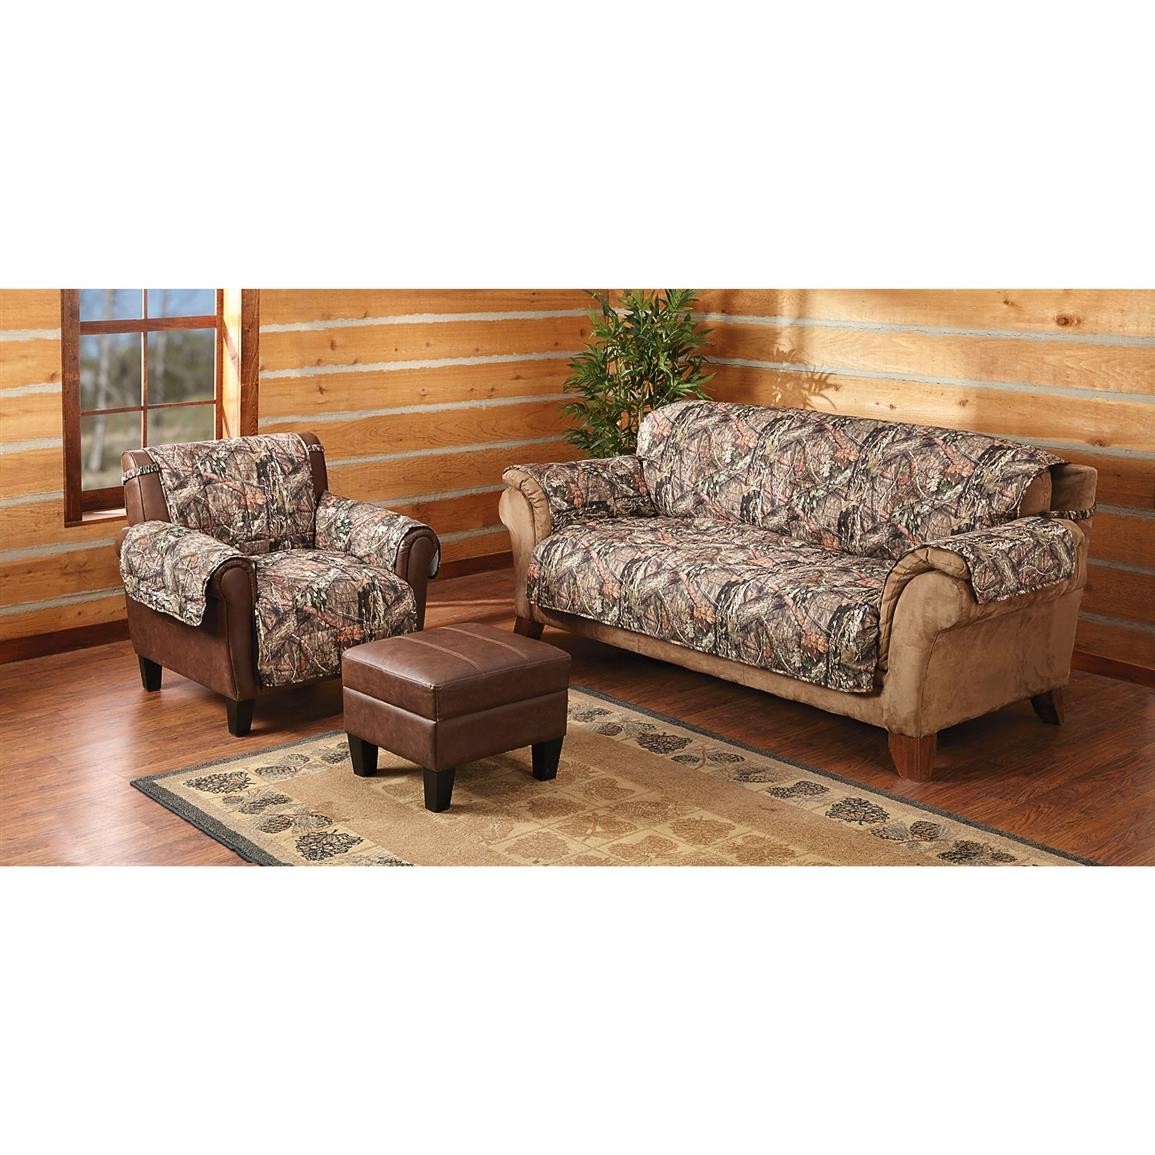 Mossy oak camo furniture covers 647980 furniture covers 2